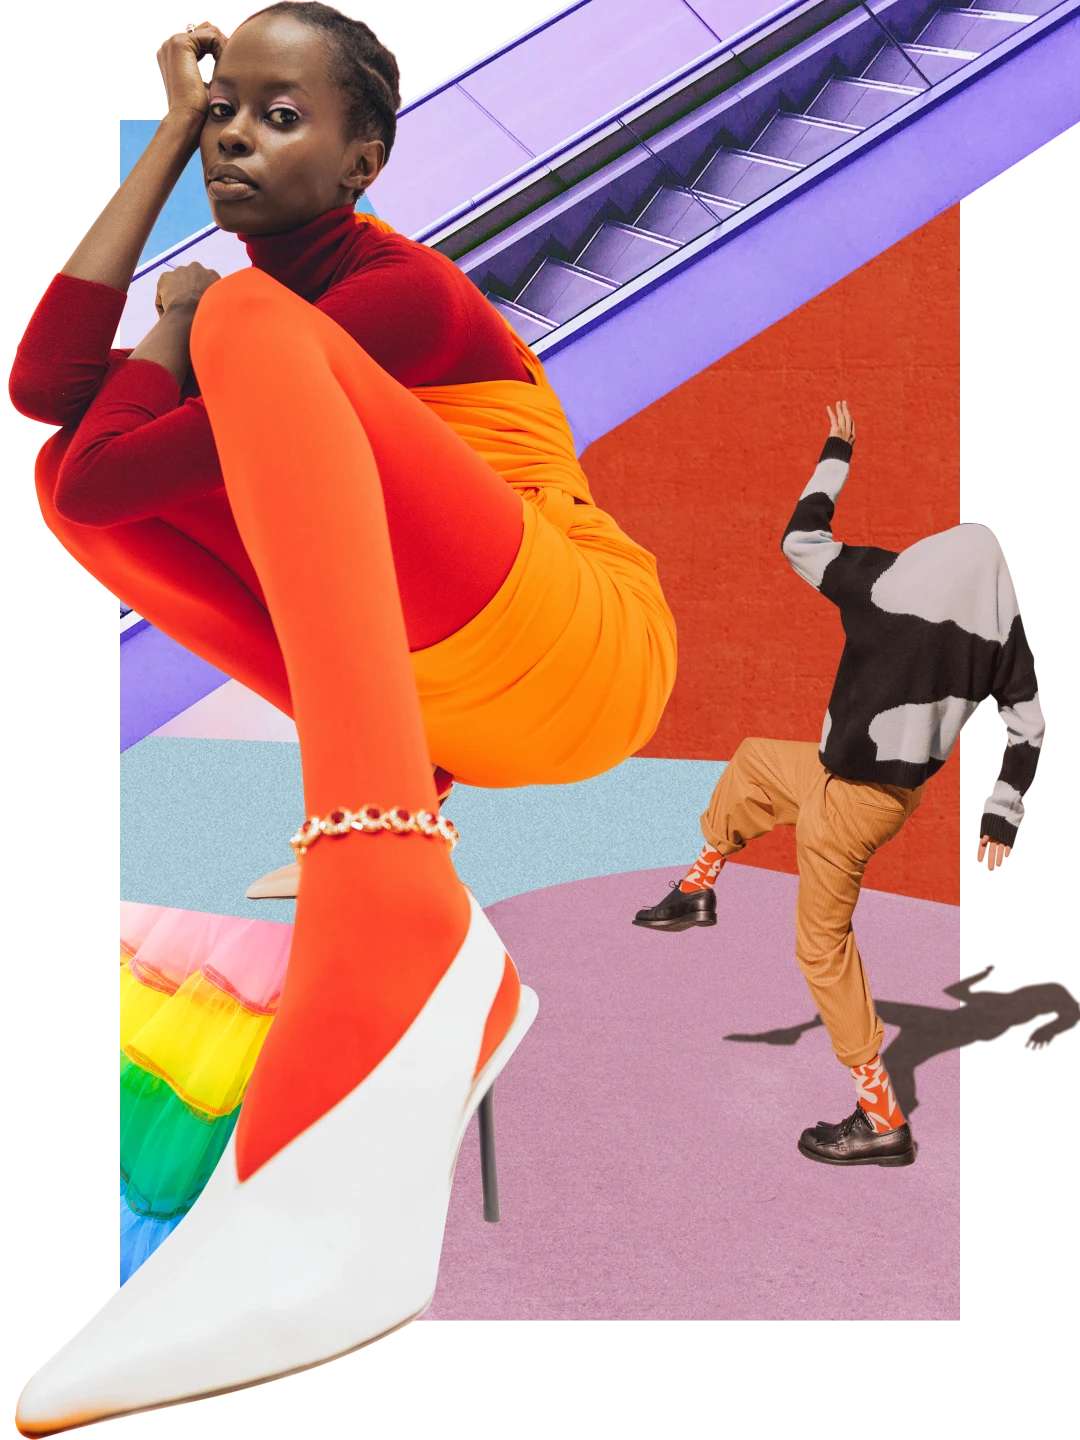 Colagem de objetos e vestuário de cores brilhantes. Mulher negra à esquerda usando roupas laranja. Pessoa à direita usando blusa estampada cobrindo a cabeça, calças e meias laranja. Escada rolante ao fundo, no alto.
